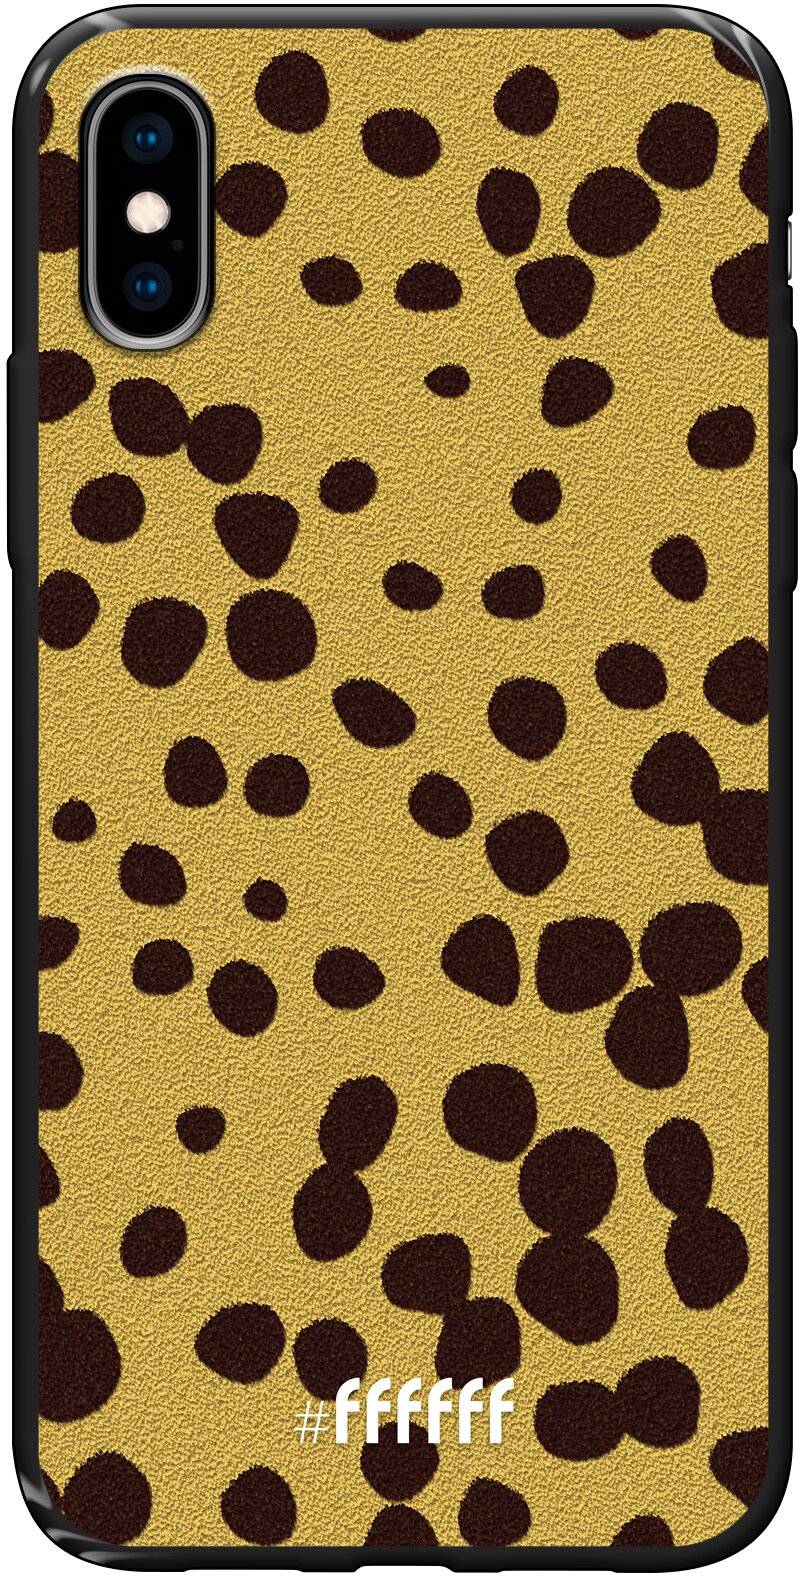 Cheetah Print iPhone X